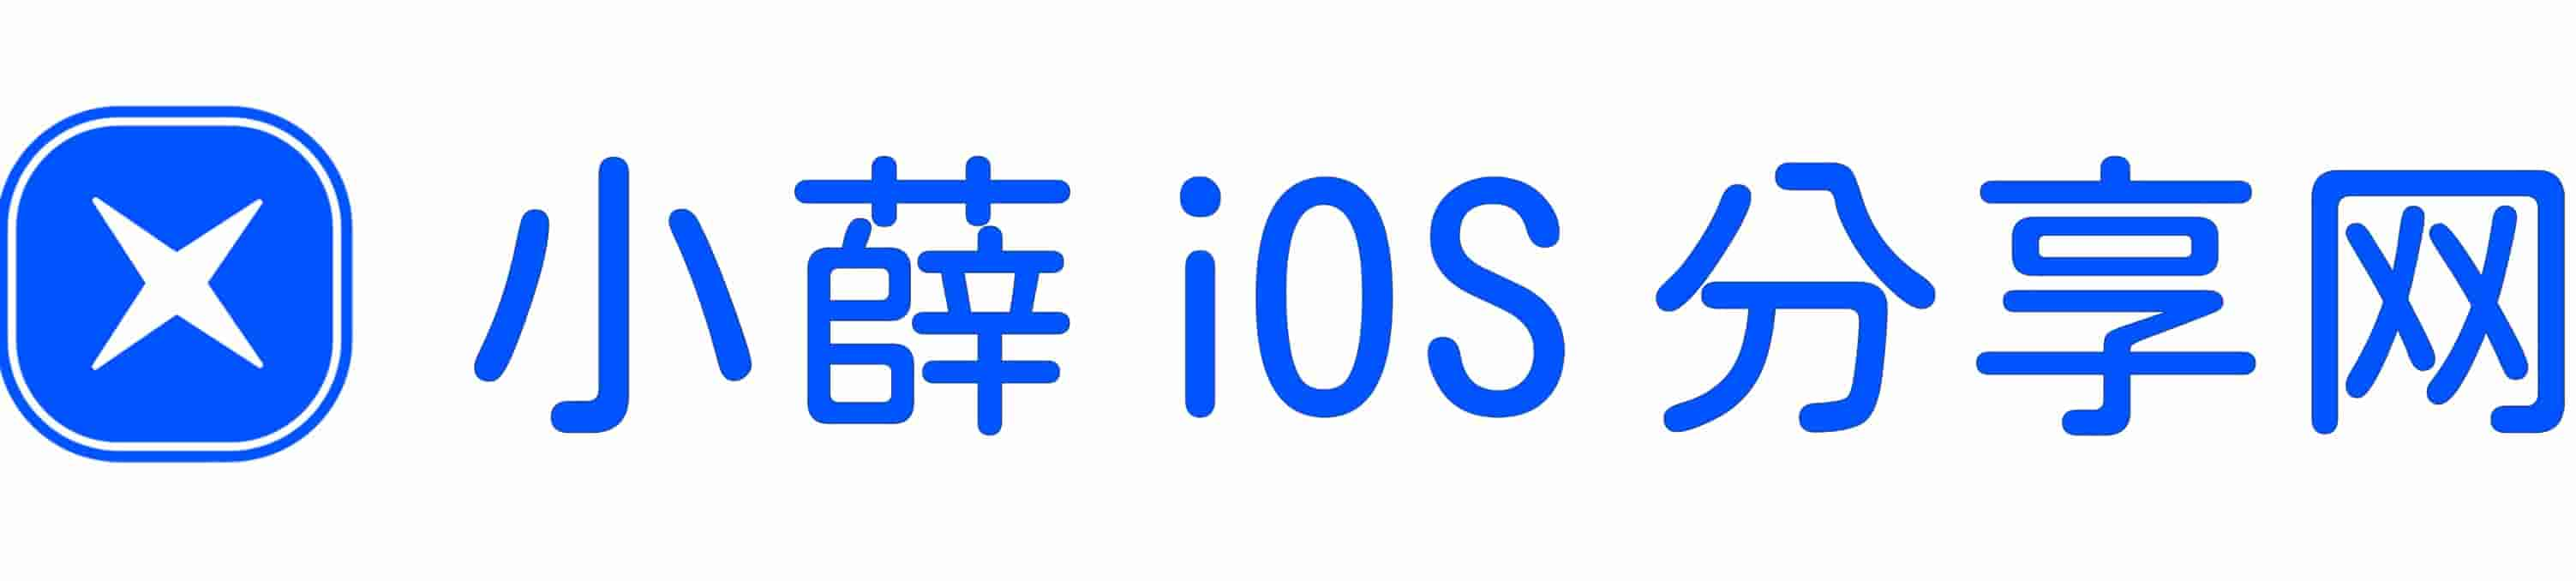 小薛iOS分享网 - 玩转iPhone手机使用技巧!